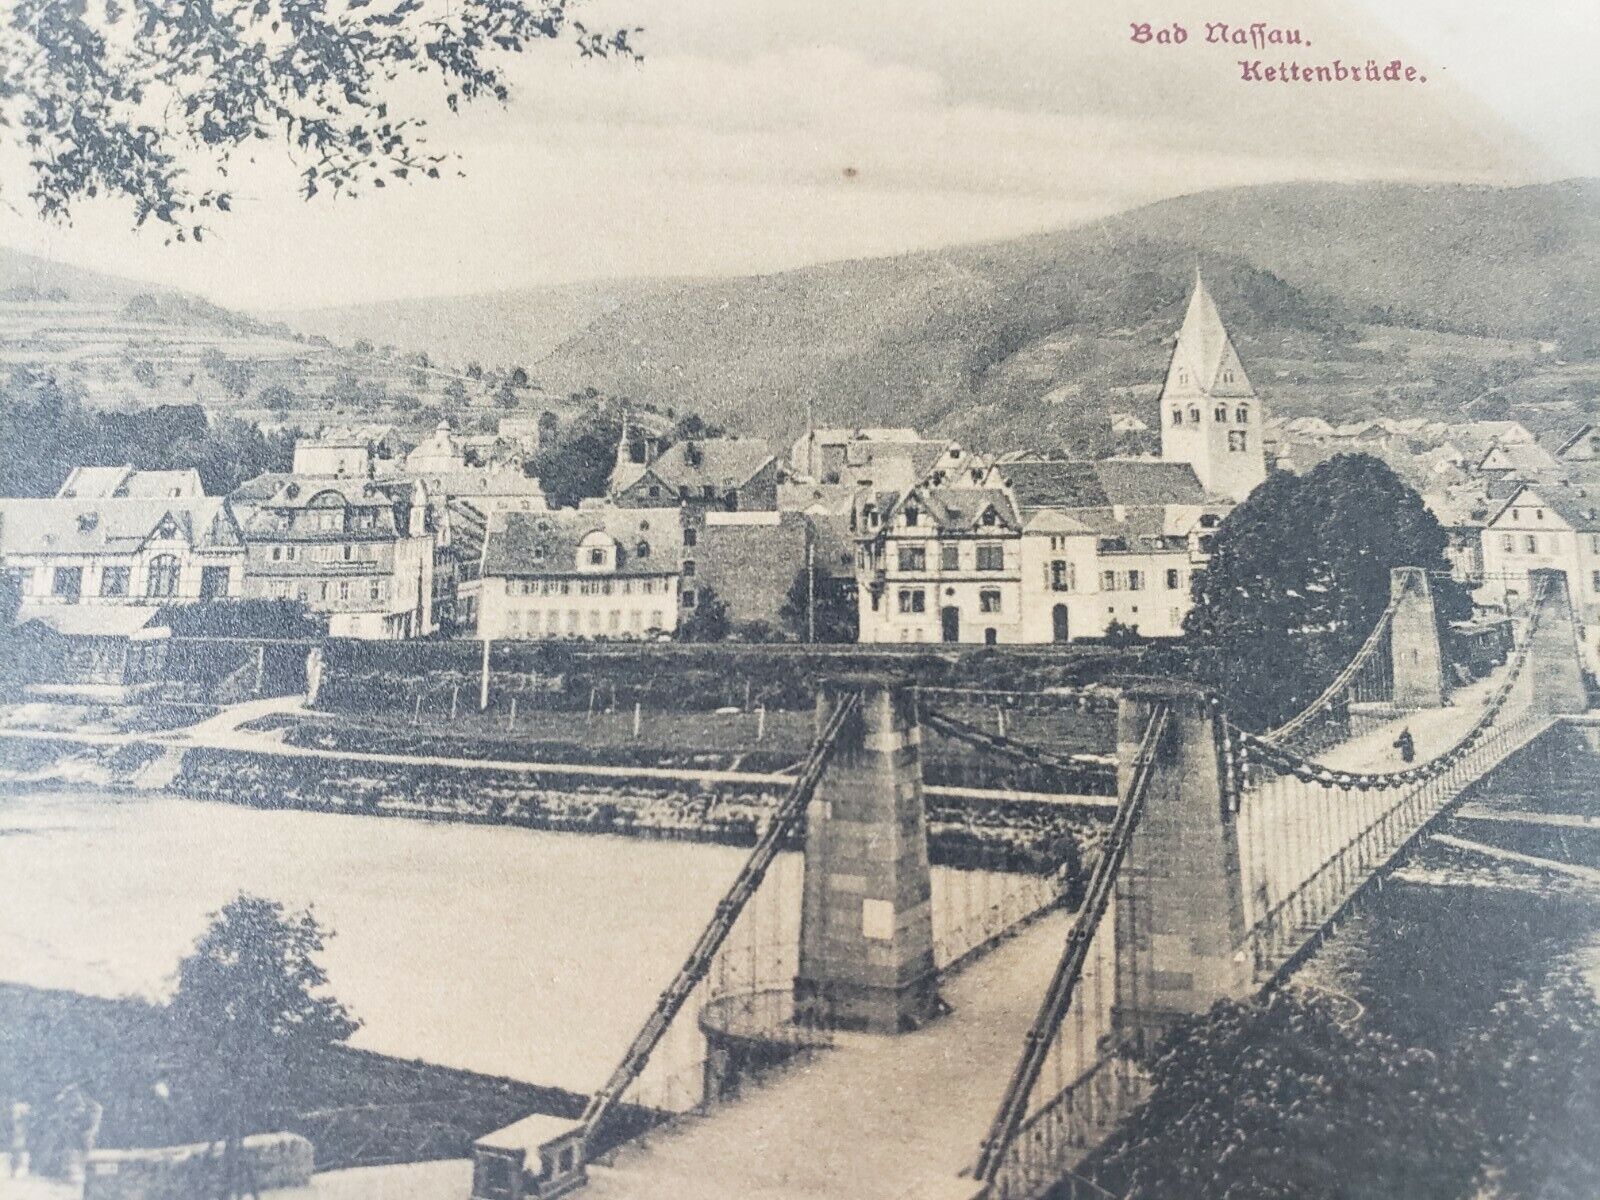 C 1922 Bridge Bad Nassau Kettenbrude Lahn Germany 10 Red Reich Stamp Postcard